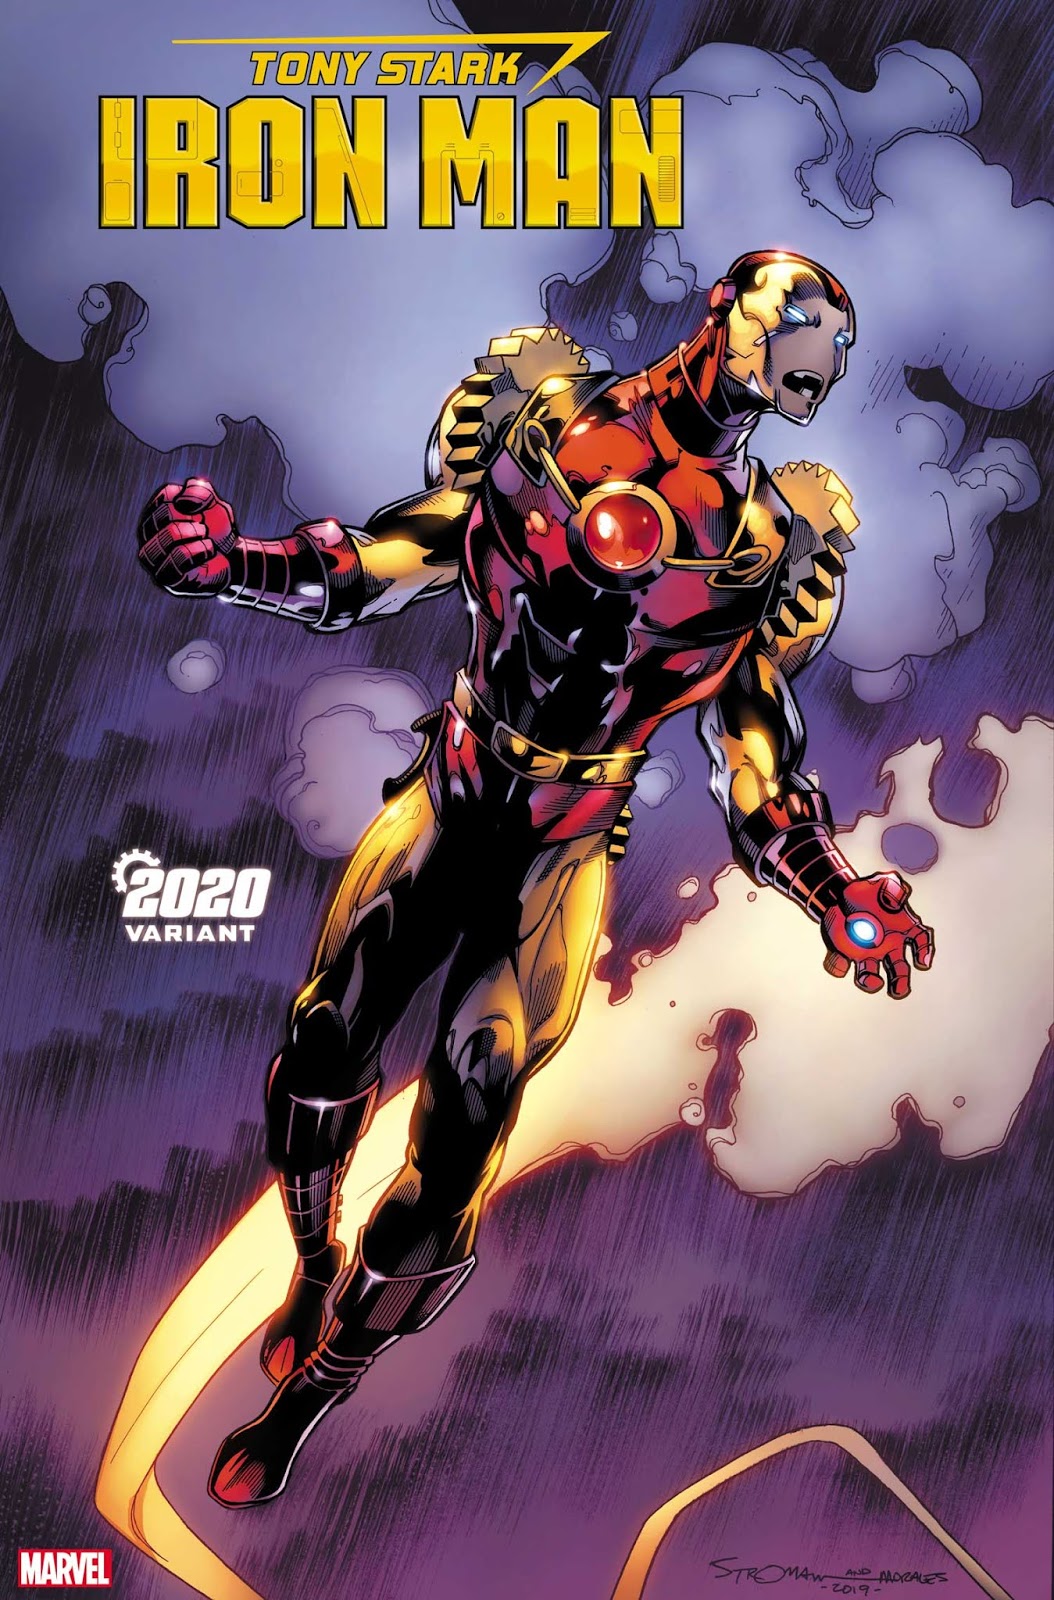 Universo Marvel 616: Tom Holland fala sobre a bilheteria e as chances de  Oscar de Homem-Aranha: Sem volta para Casa